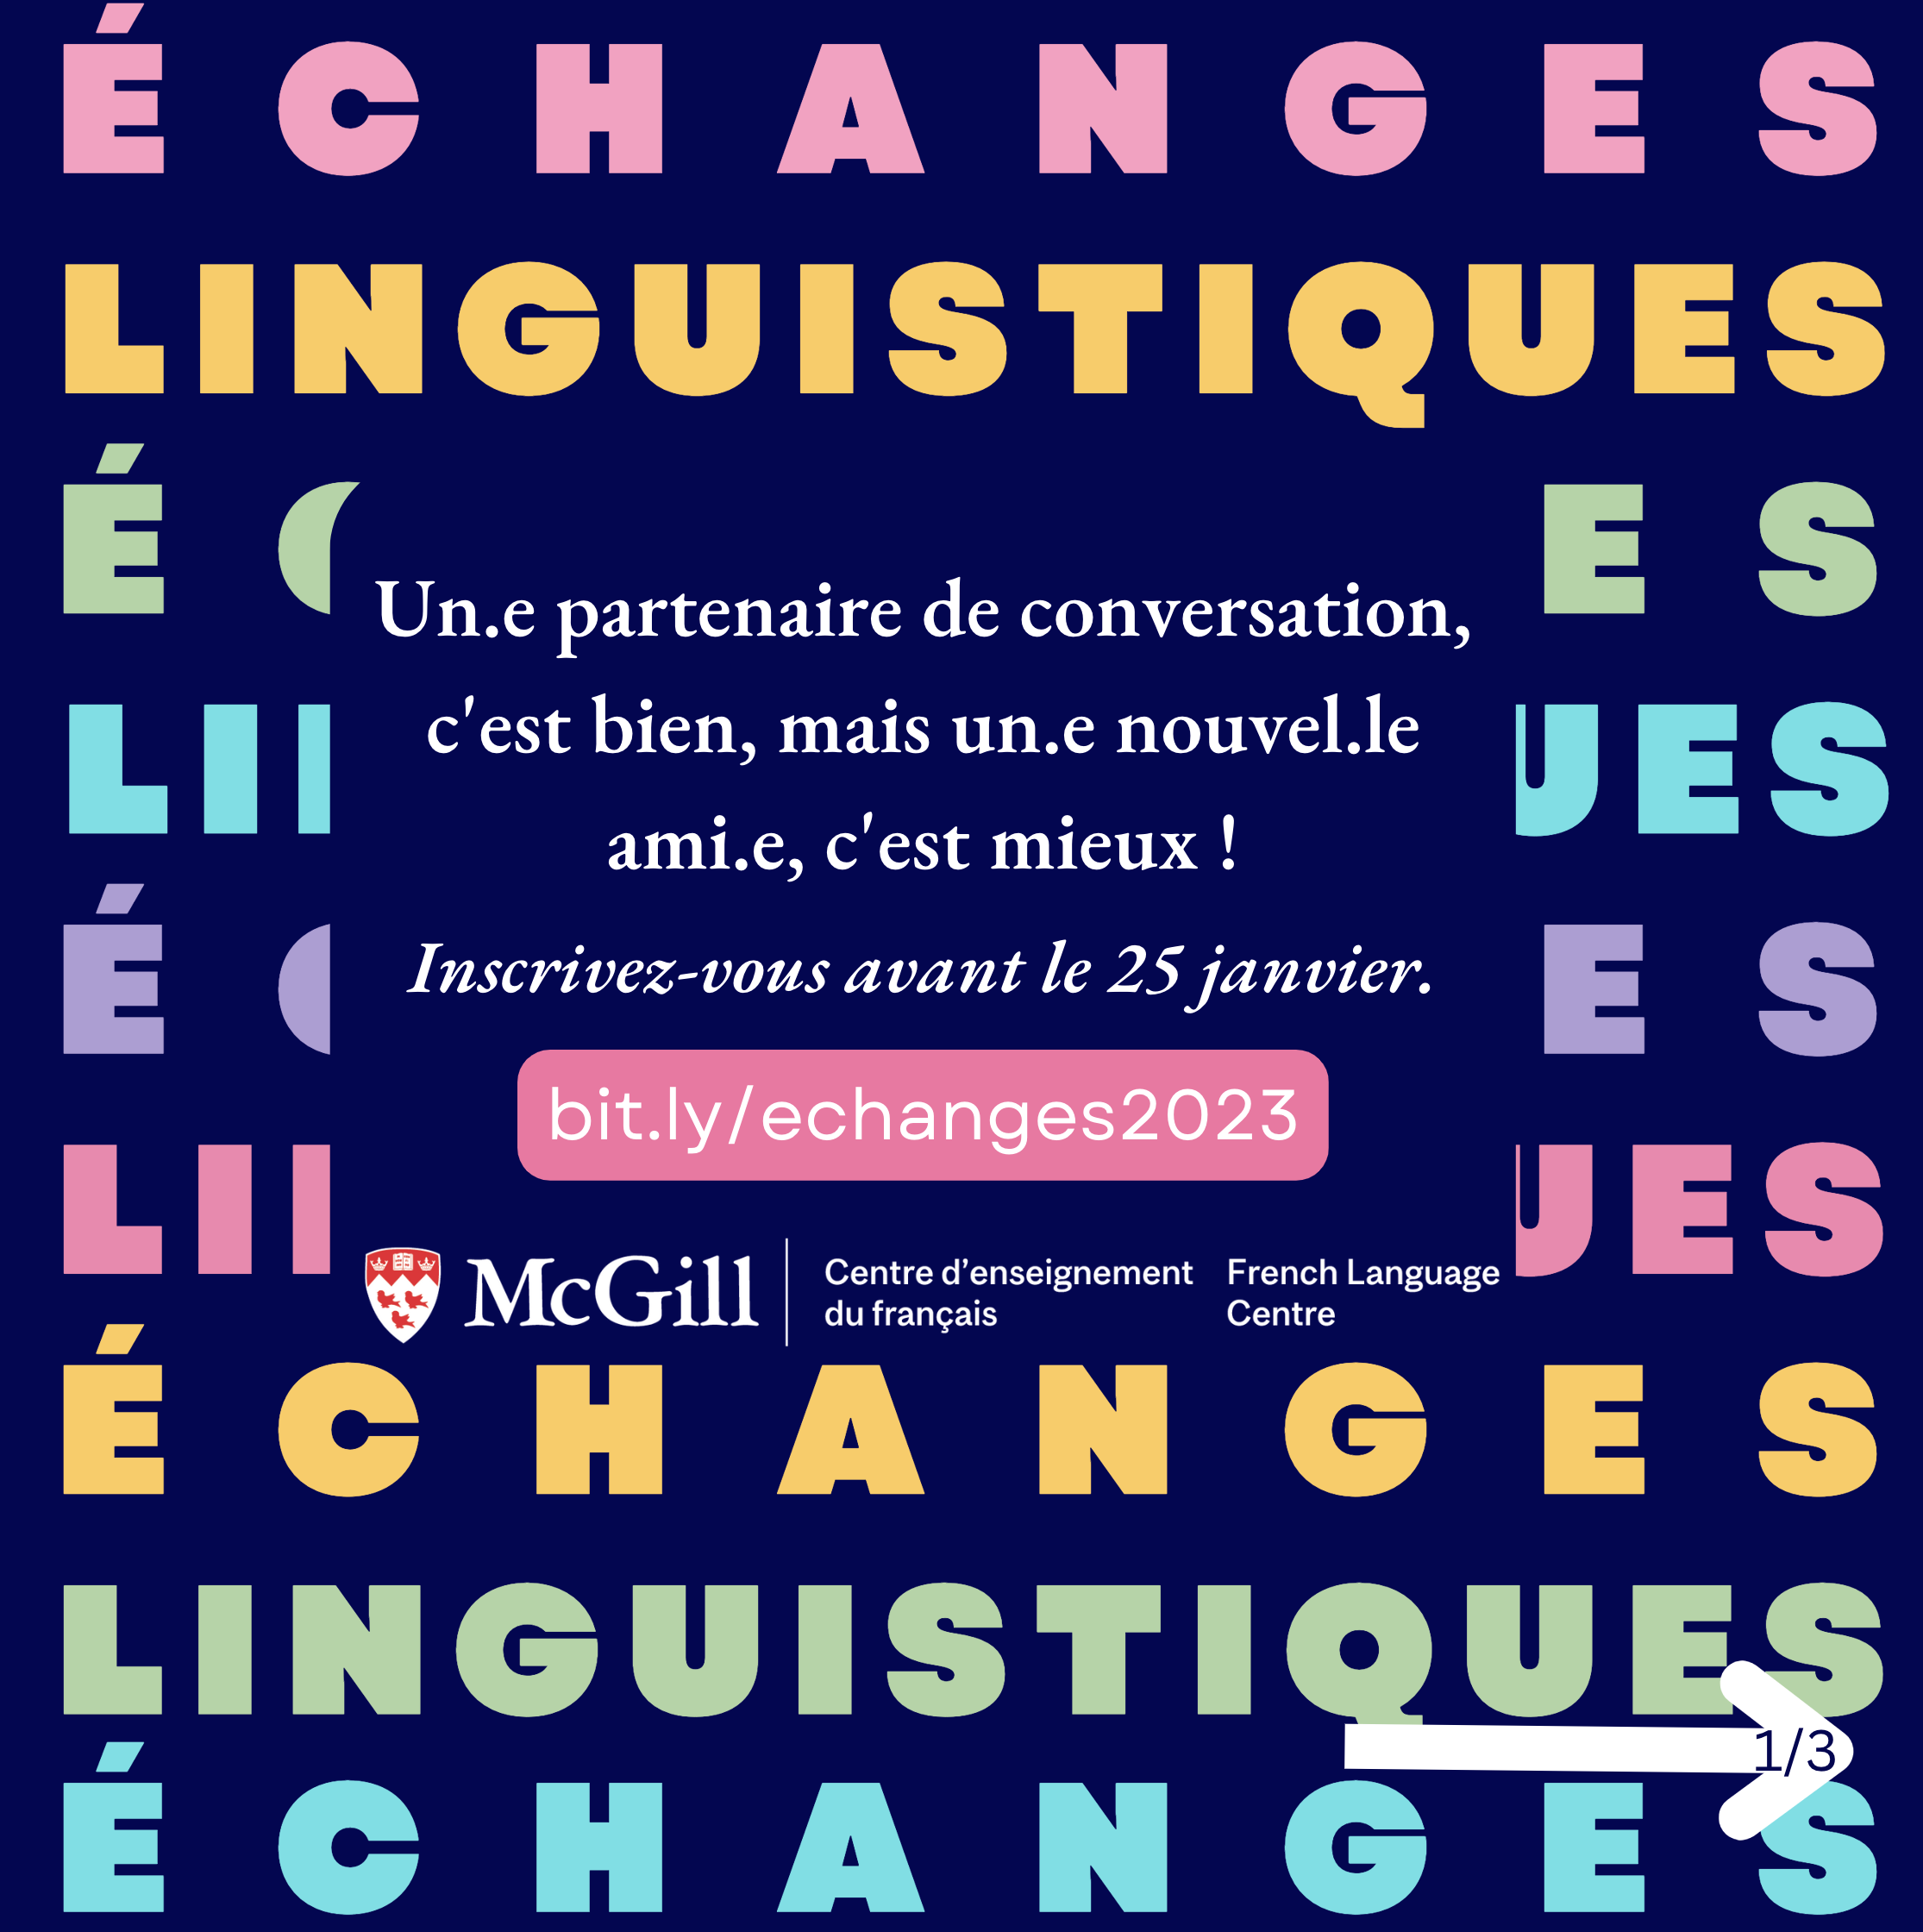 Parler avec des anglais : les meilleurs sites d'échange linguistiques